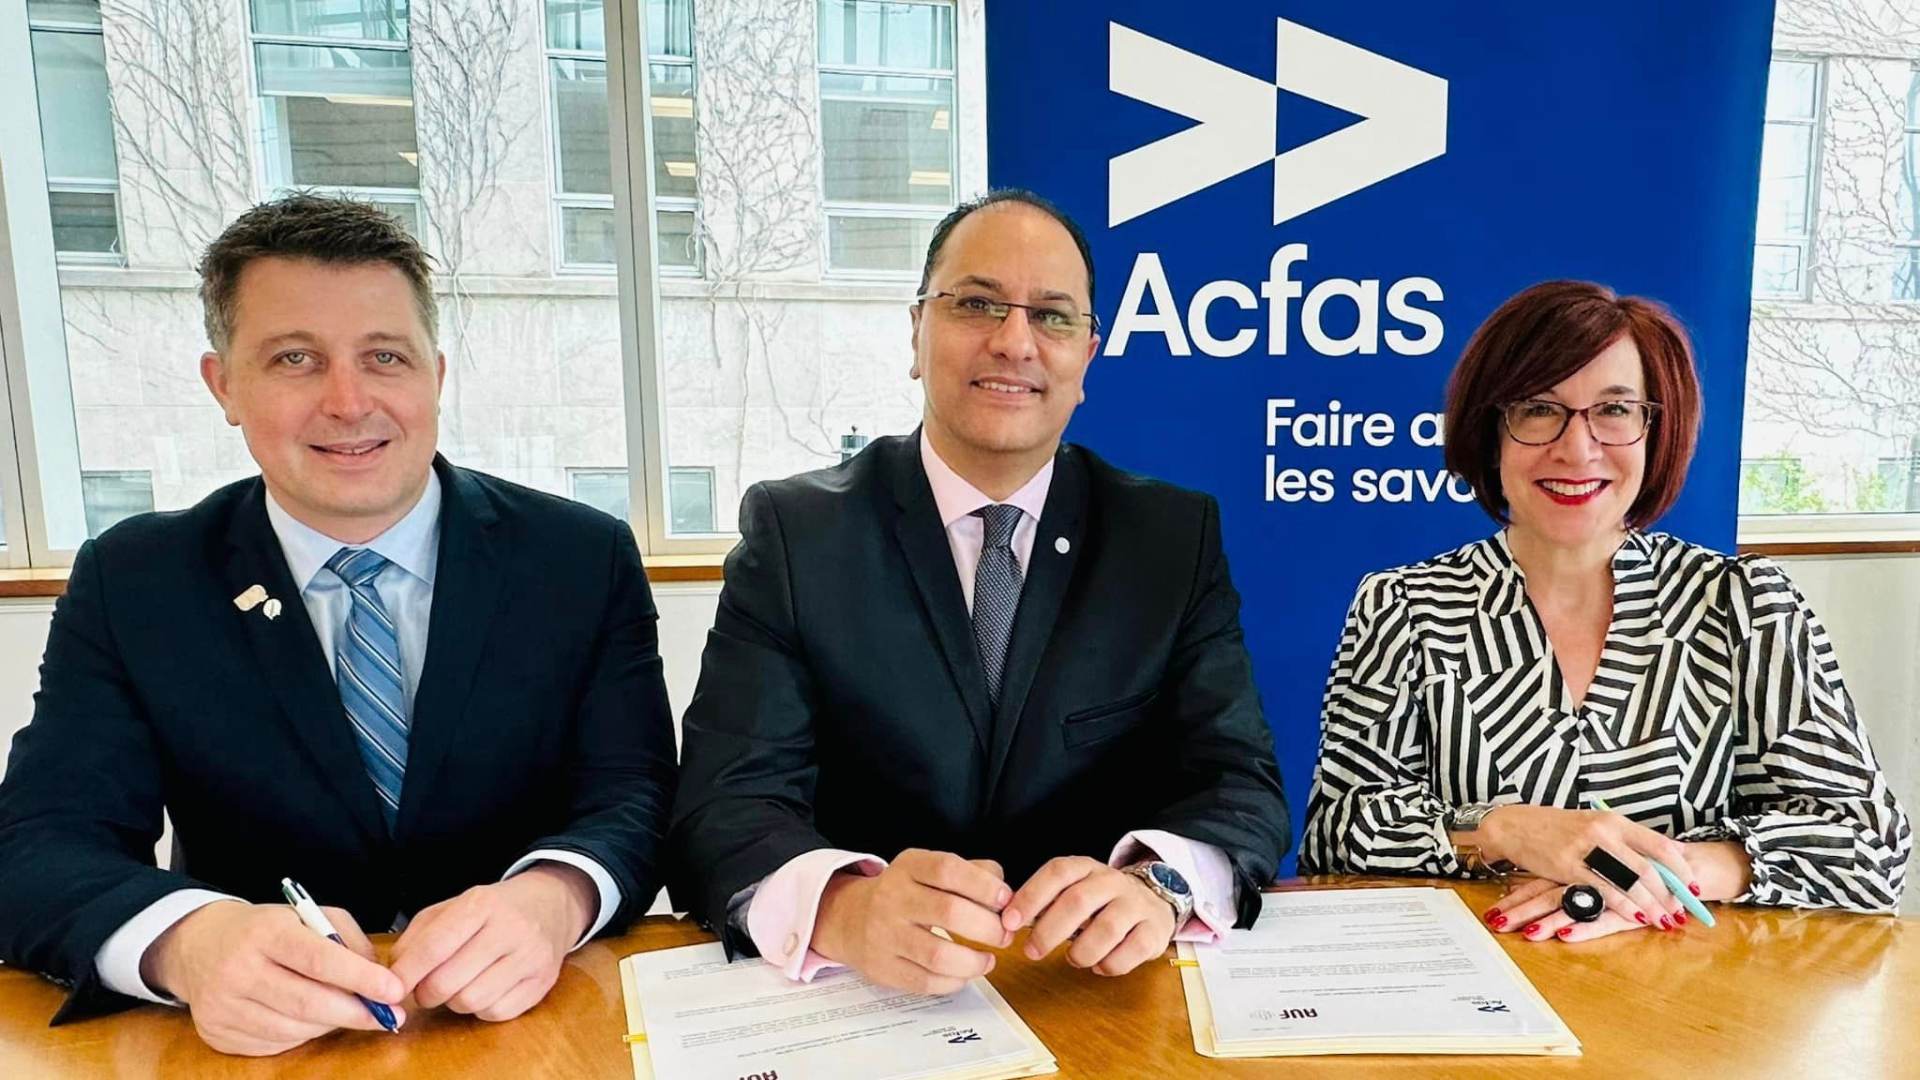 Renouvellement de l'accord-cadre AUF - Acfas